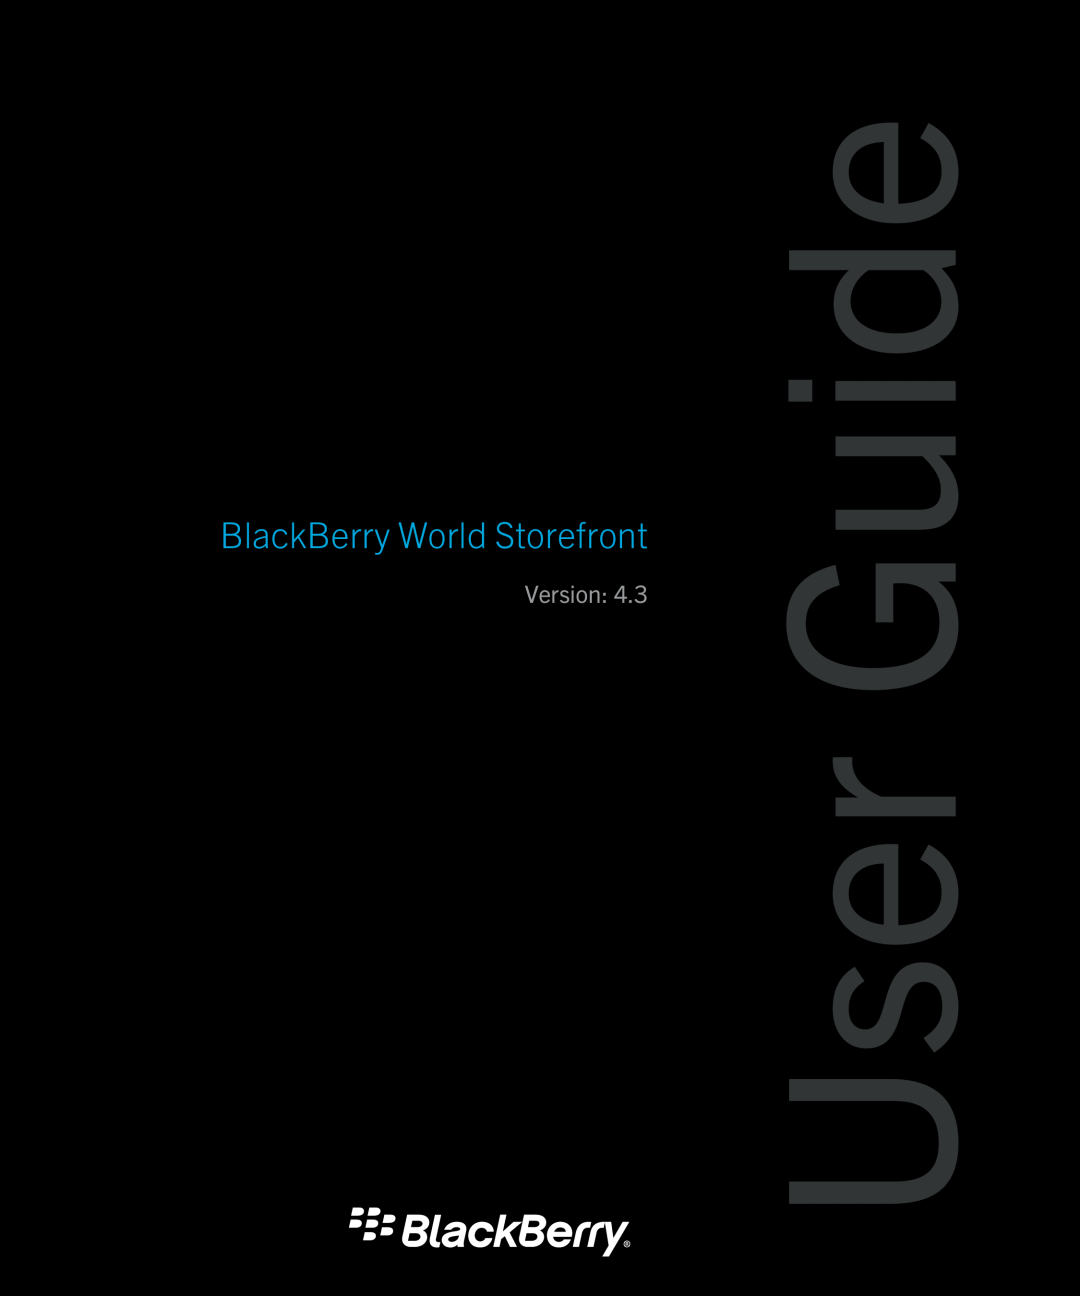 Blackberry 4.3 manual User Guide, BlackBerry World Storefront, Version 